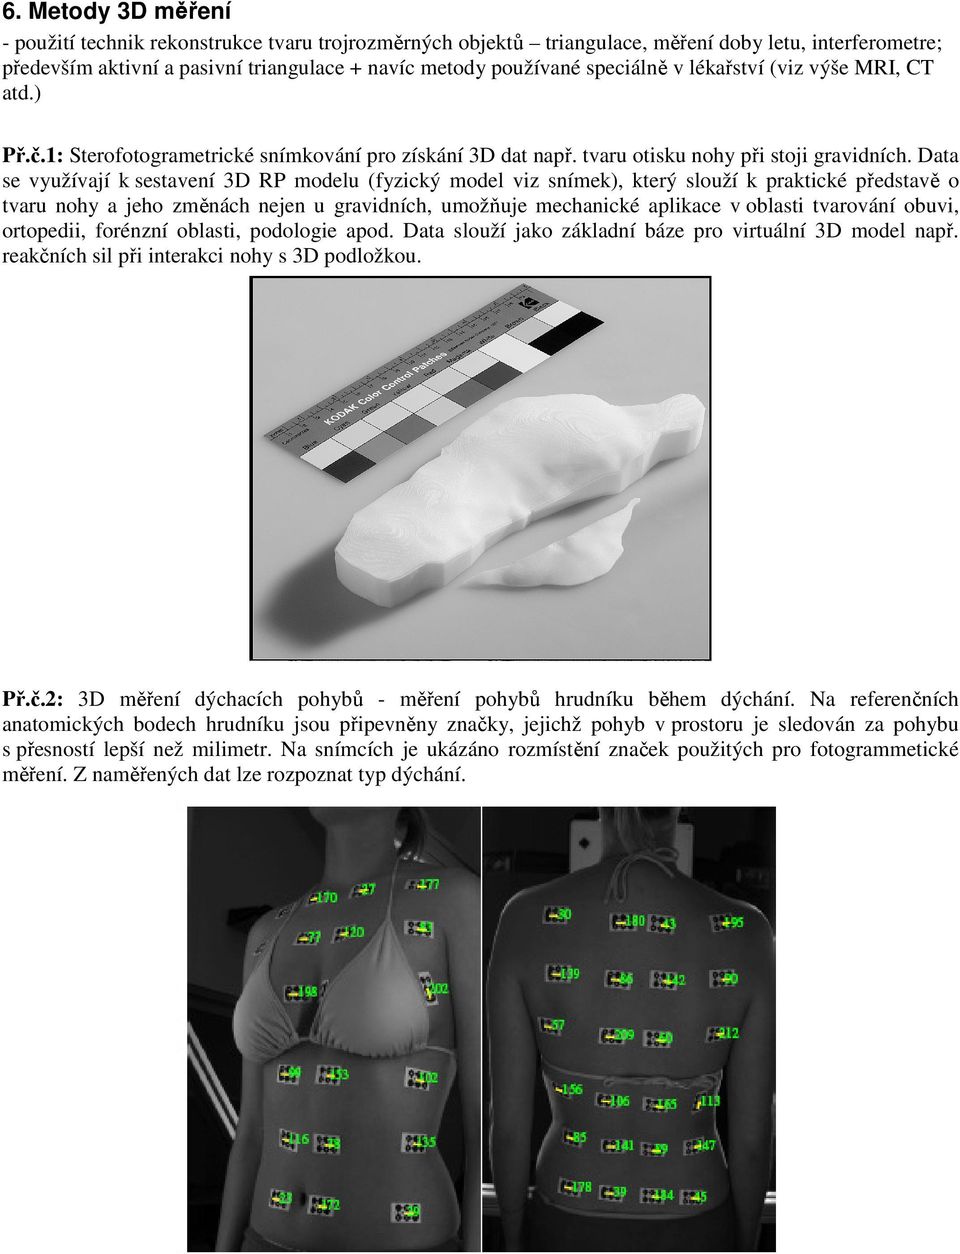 Data se využívají k sestavení 3D RP modelu (fyzický model viz snímek), který slouží k praktické představě o tvaru nohy a jeho změnách nejen u gravidních, umožňuje mechanické aplikace v oblasti